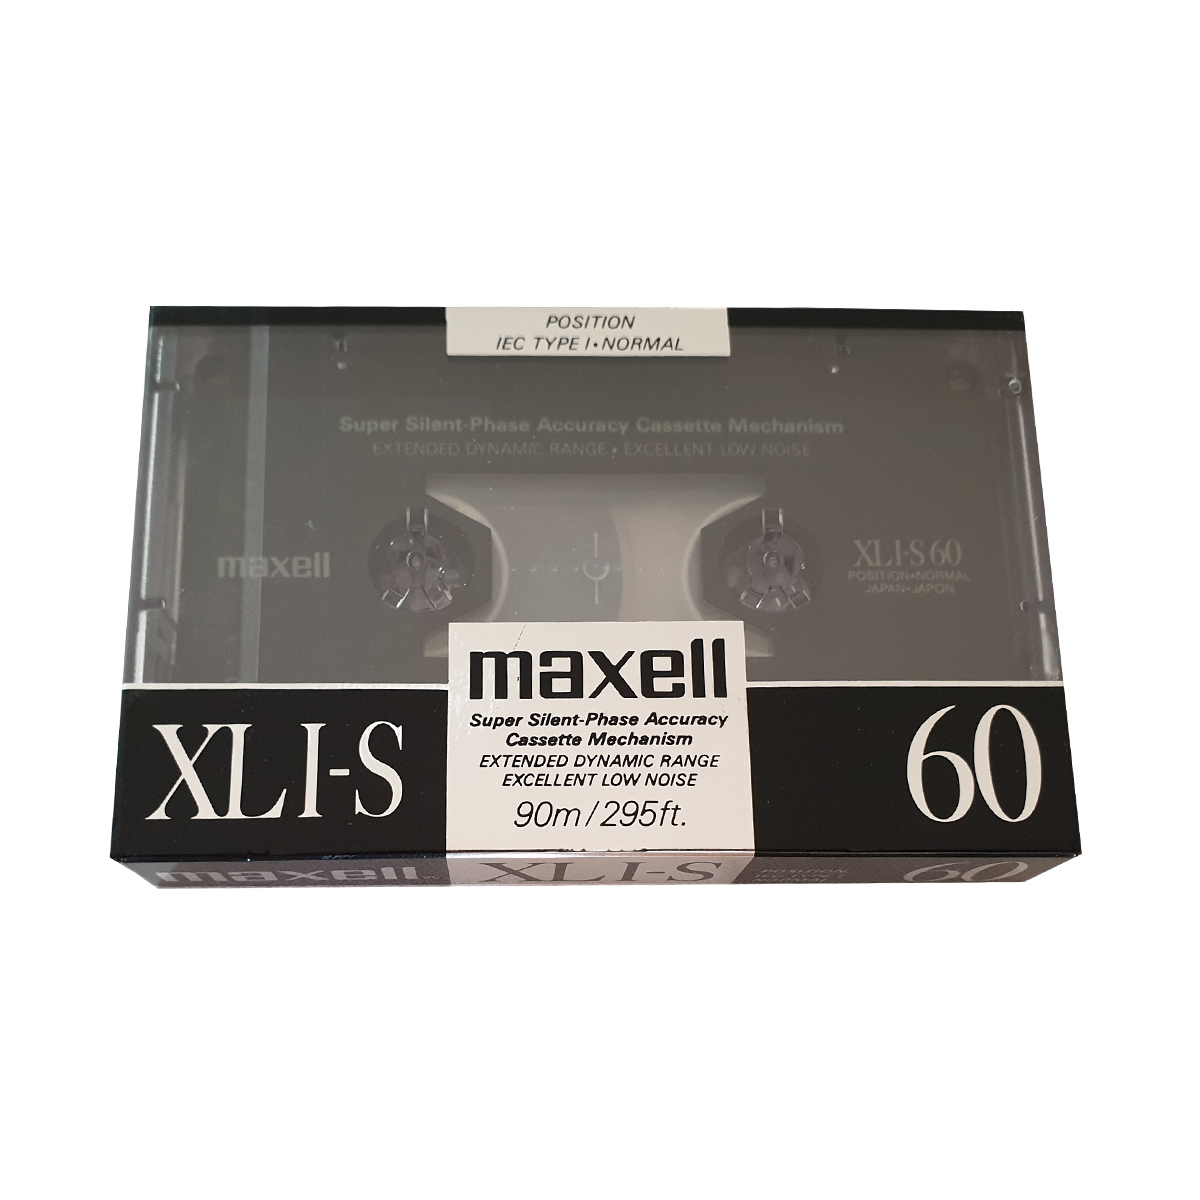 نوار کاست مکسل مدل maxell XLI-S